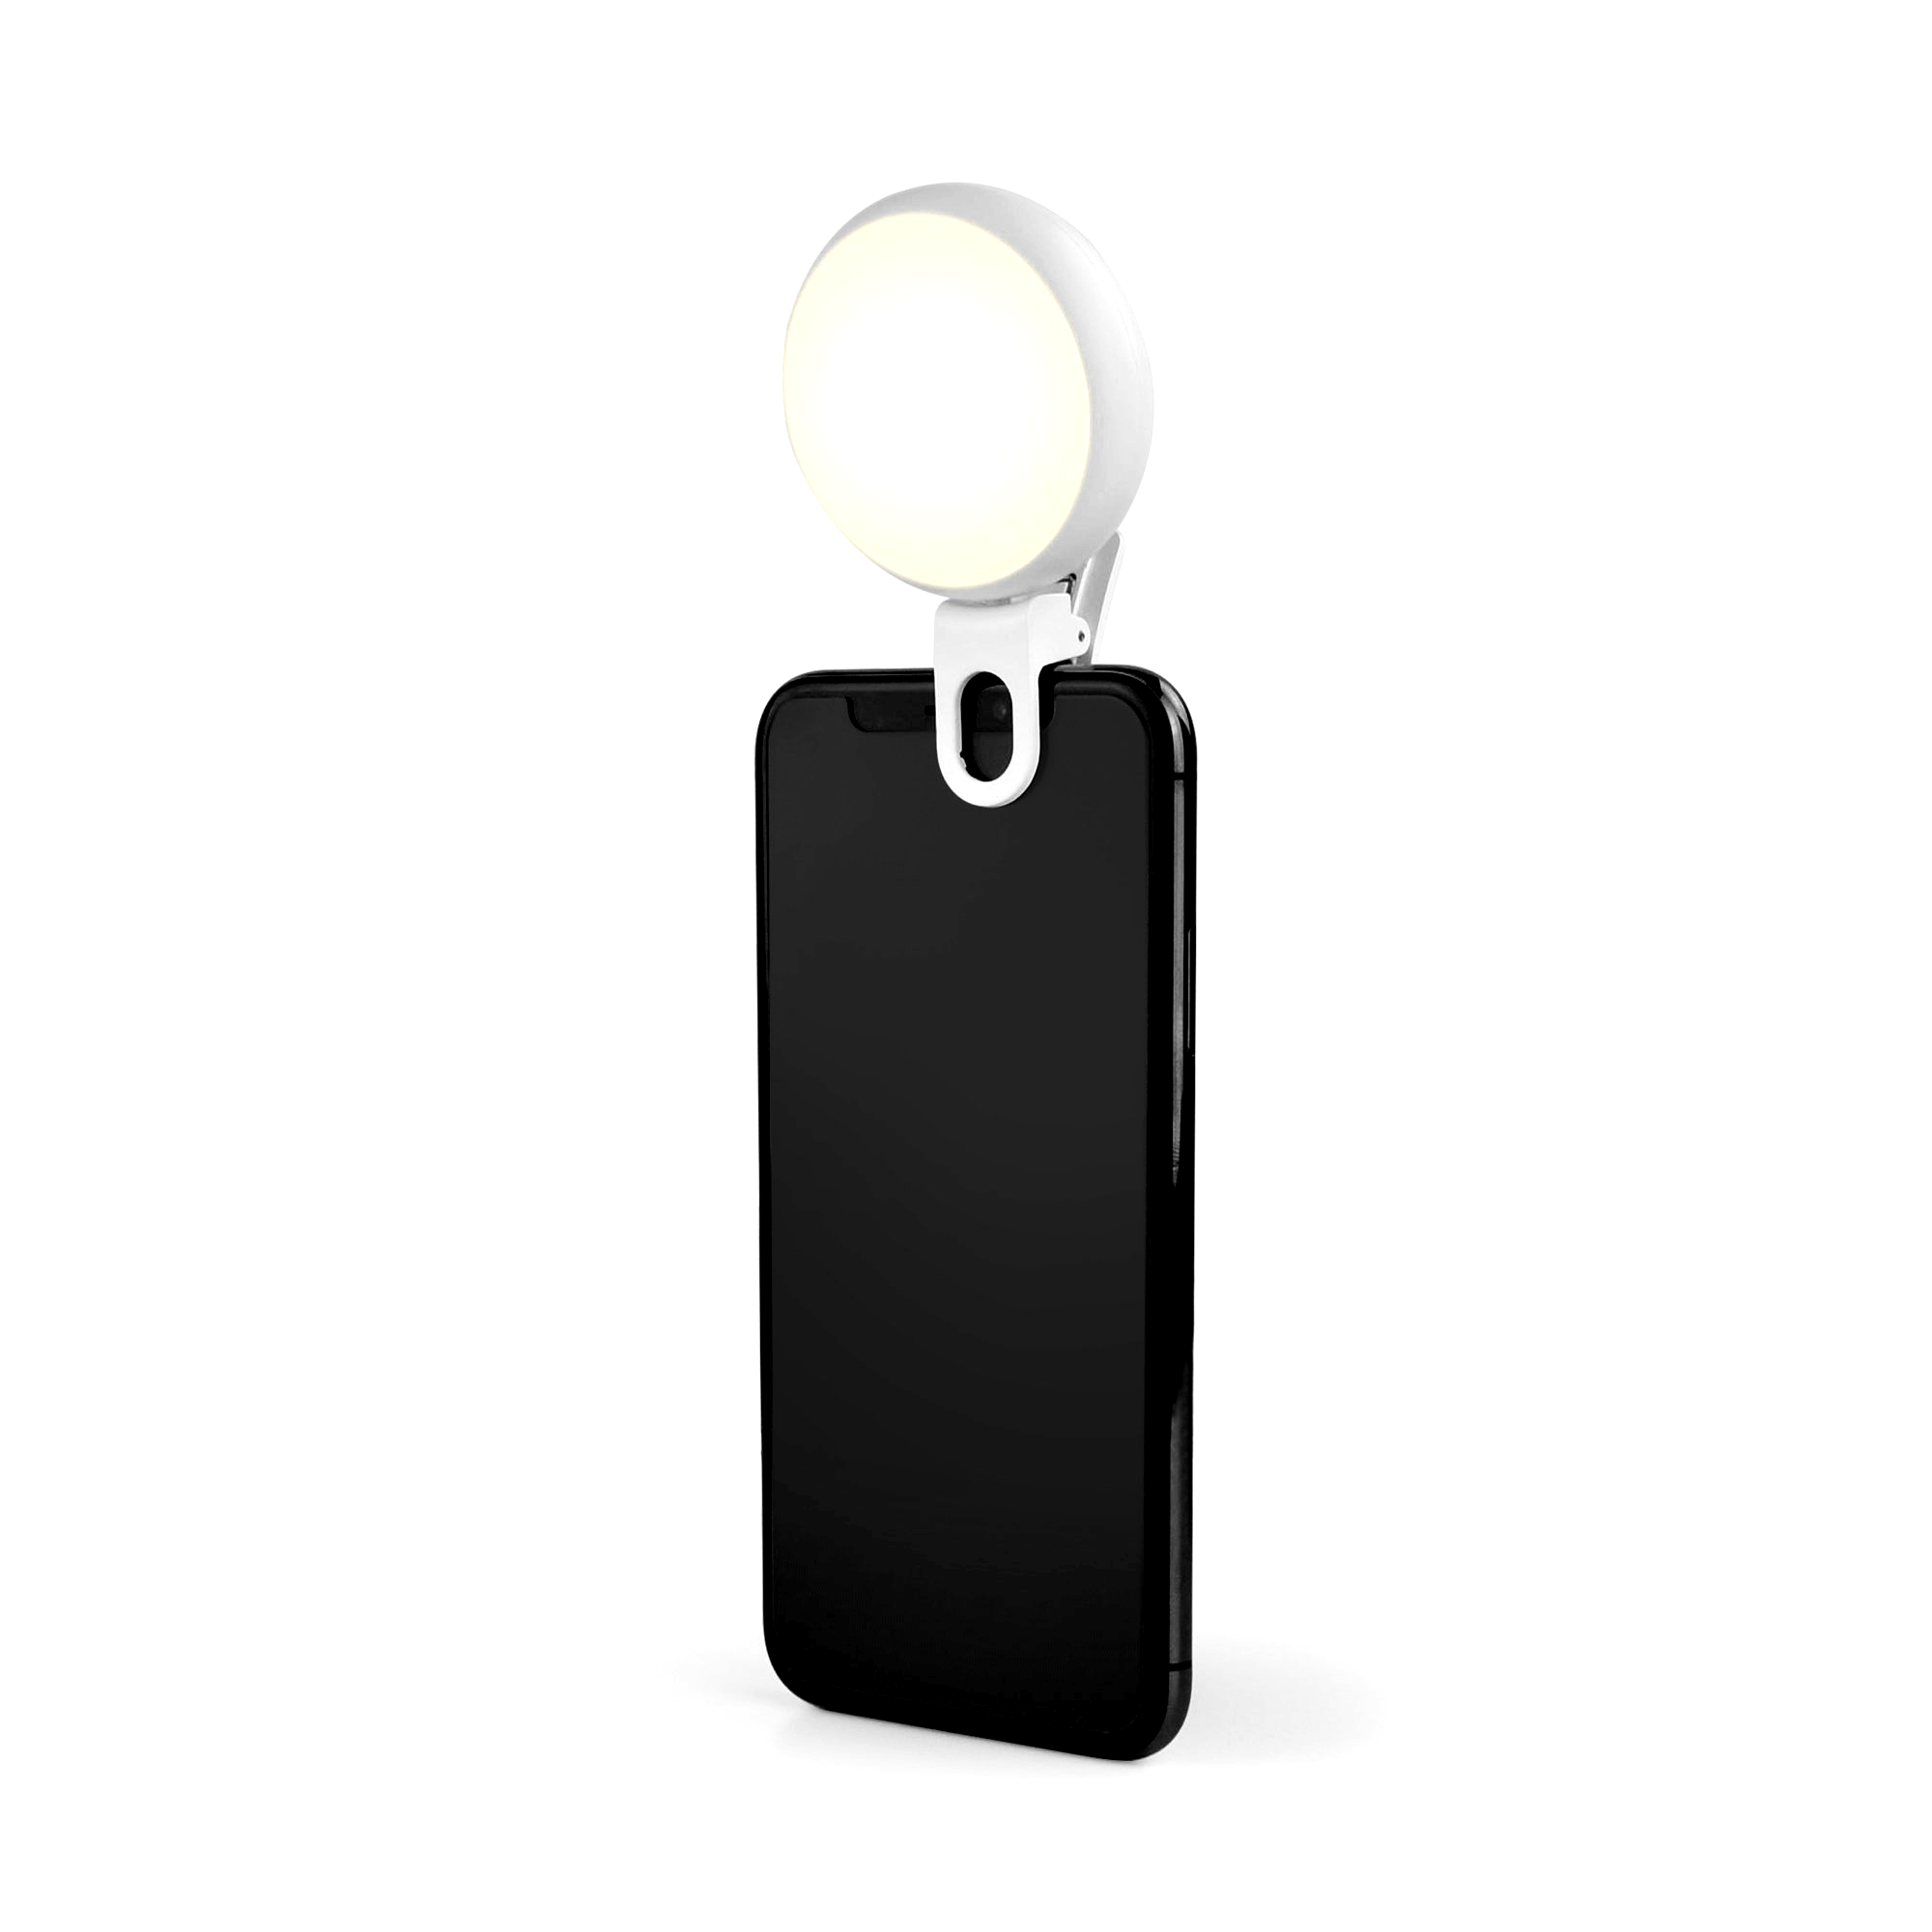  Lampa - Selfie Queen Light | Legami 